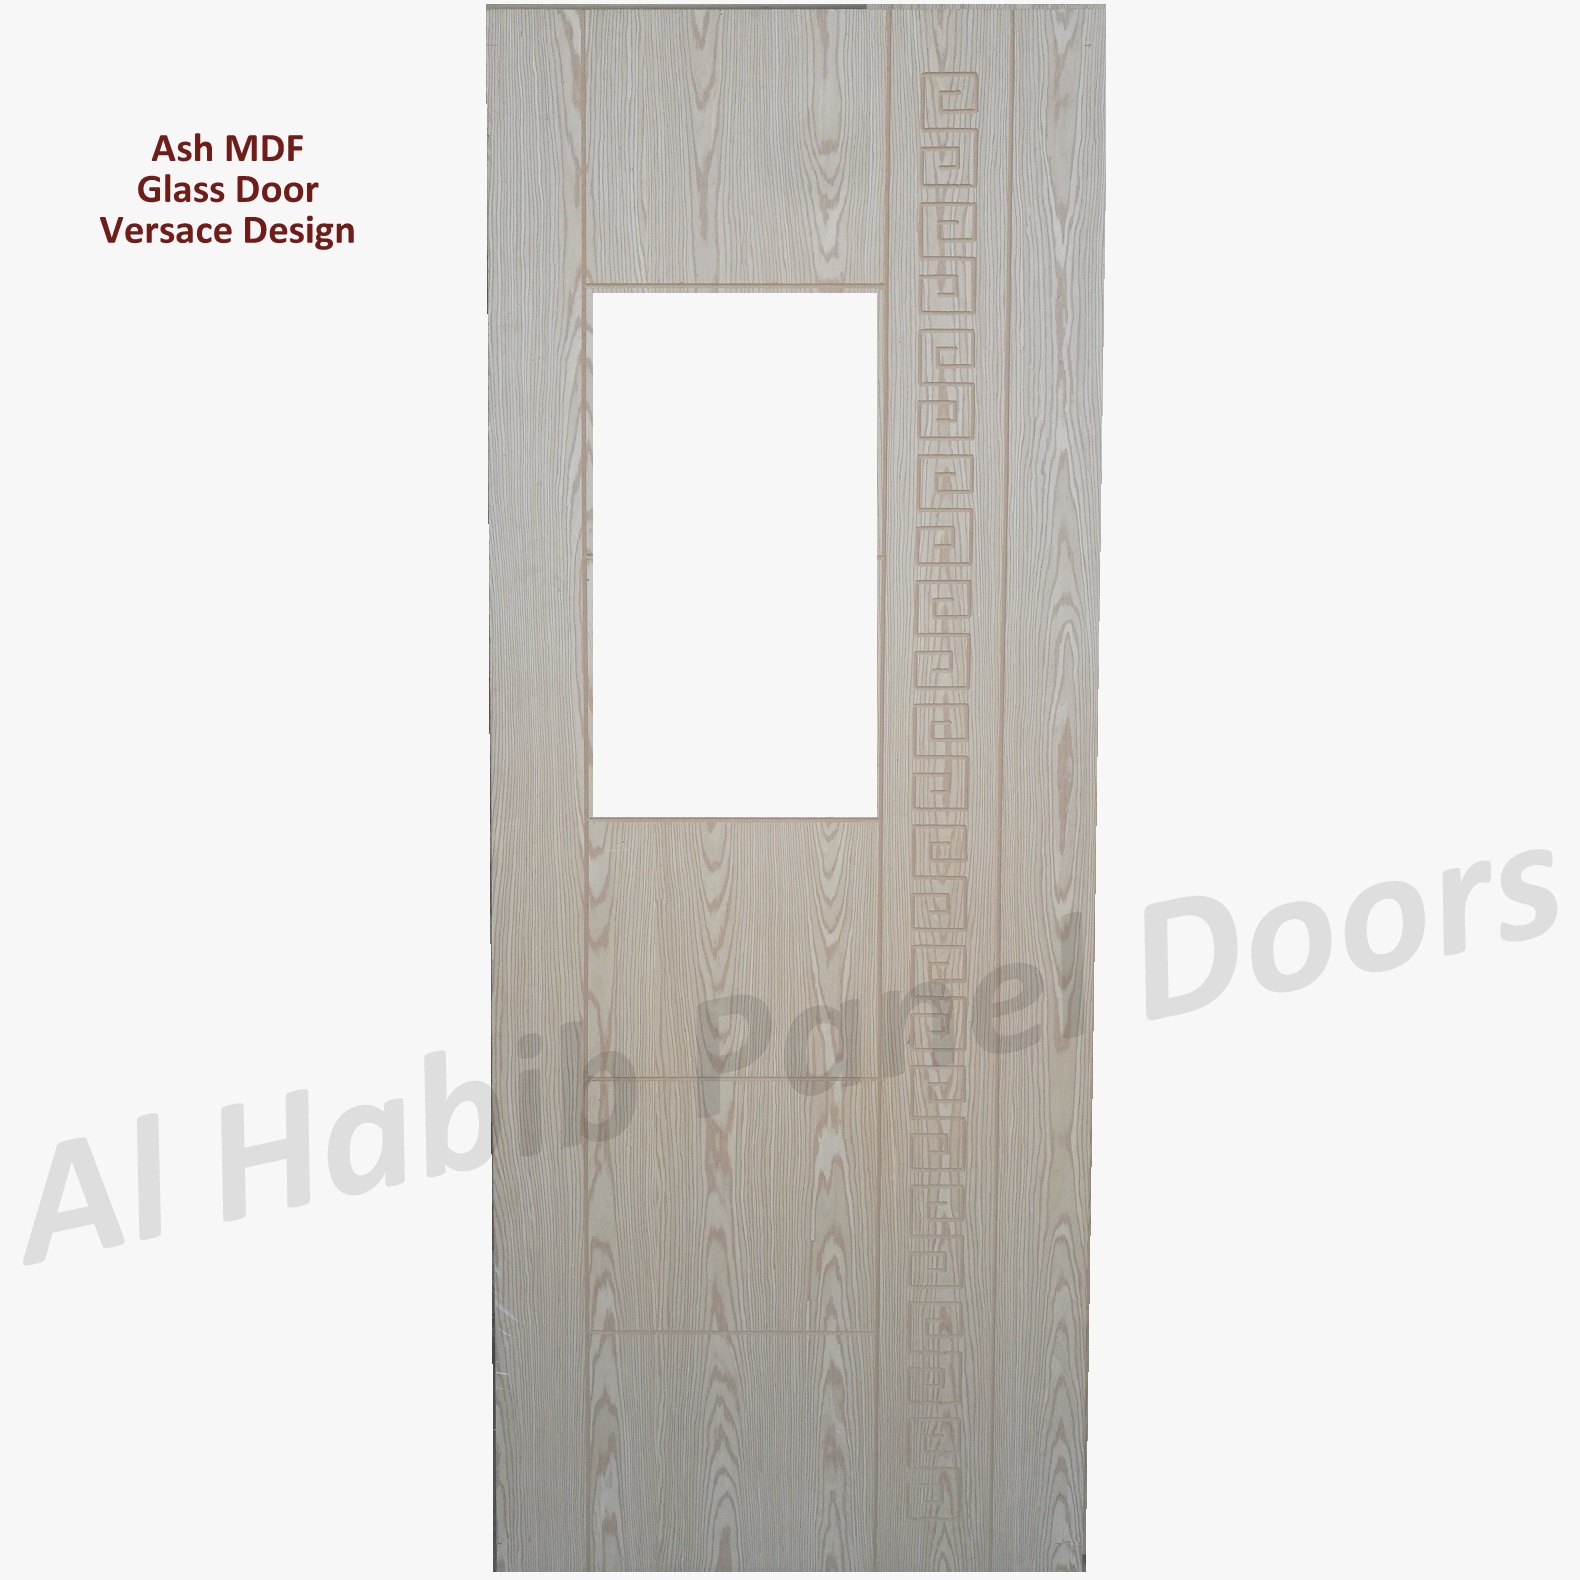 Ash MDF Versace Design Glass Door